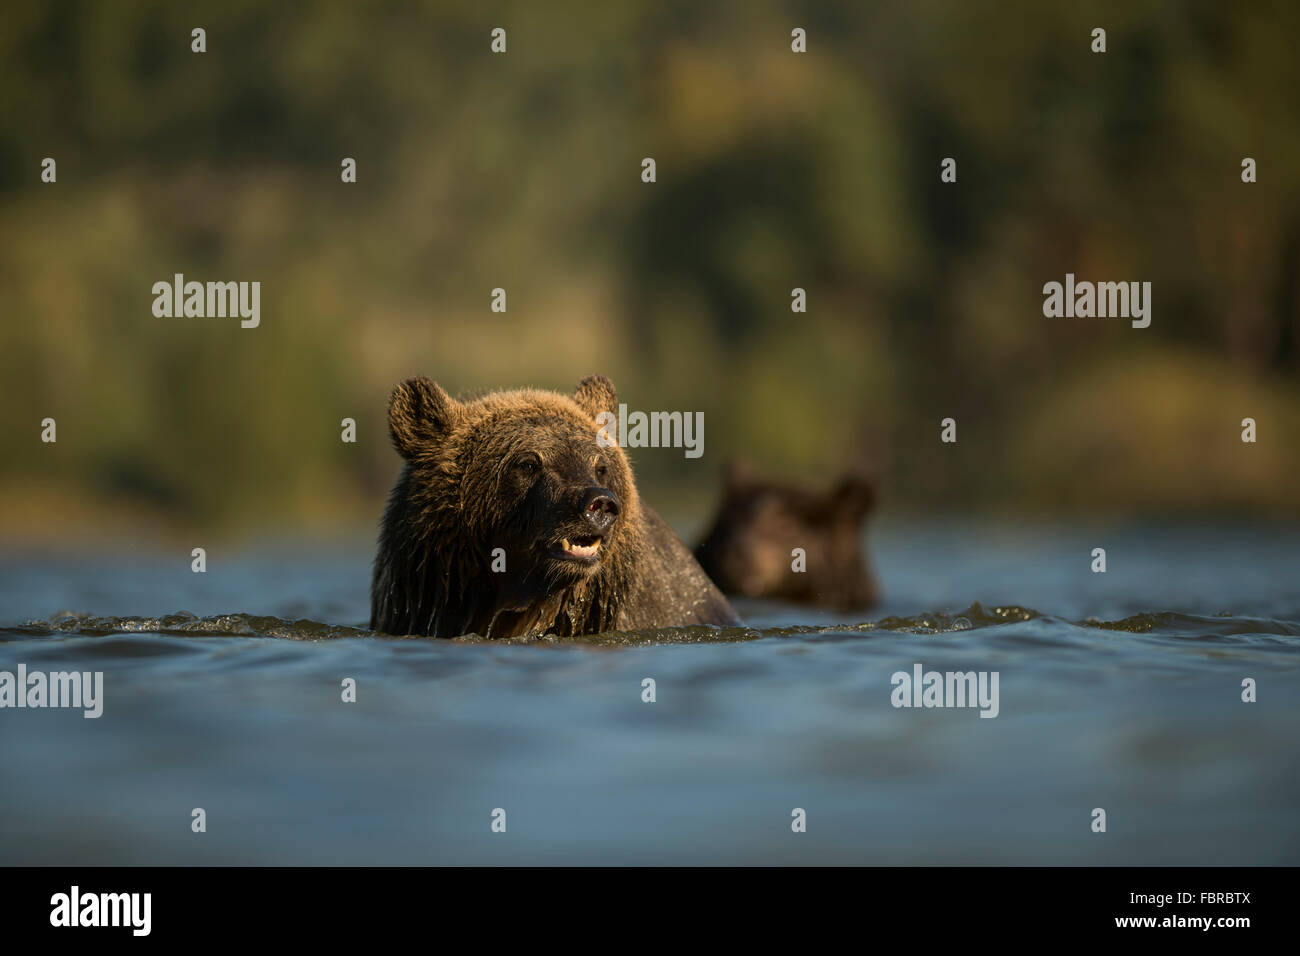 Europäische Braunbären (Ursus Arctos) schwimmen, in einer breiten Strecke der Wasser, umgeben von grünen Wäldern. Stockfoto